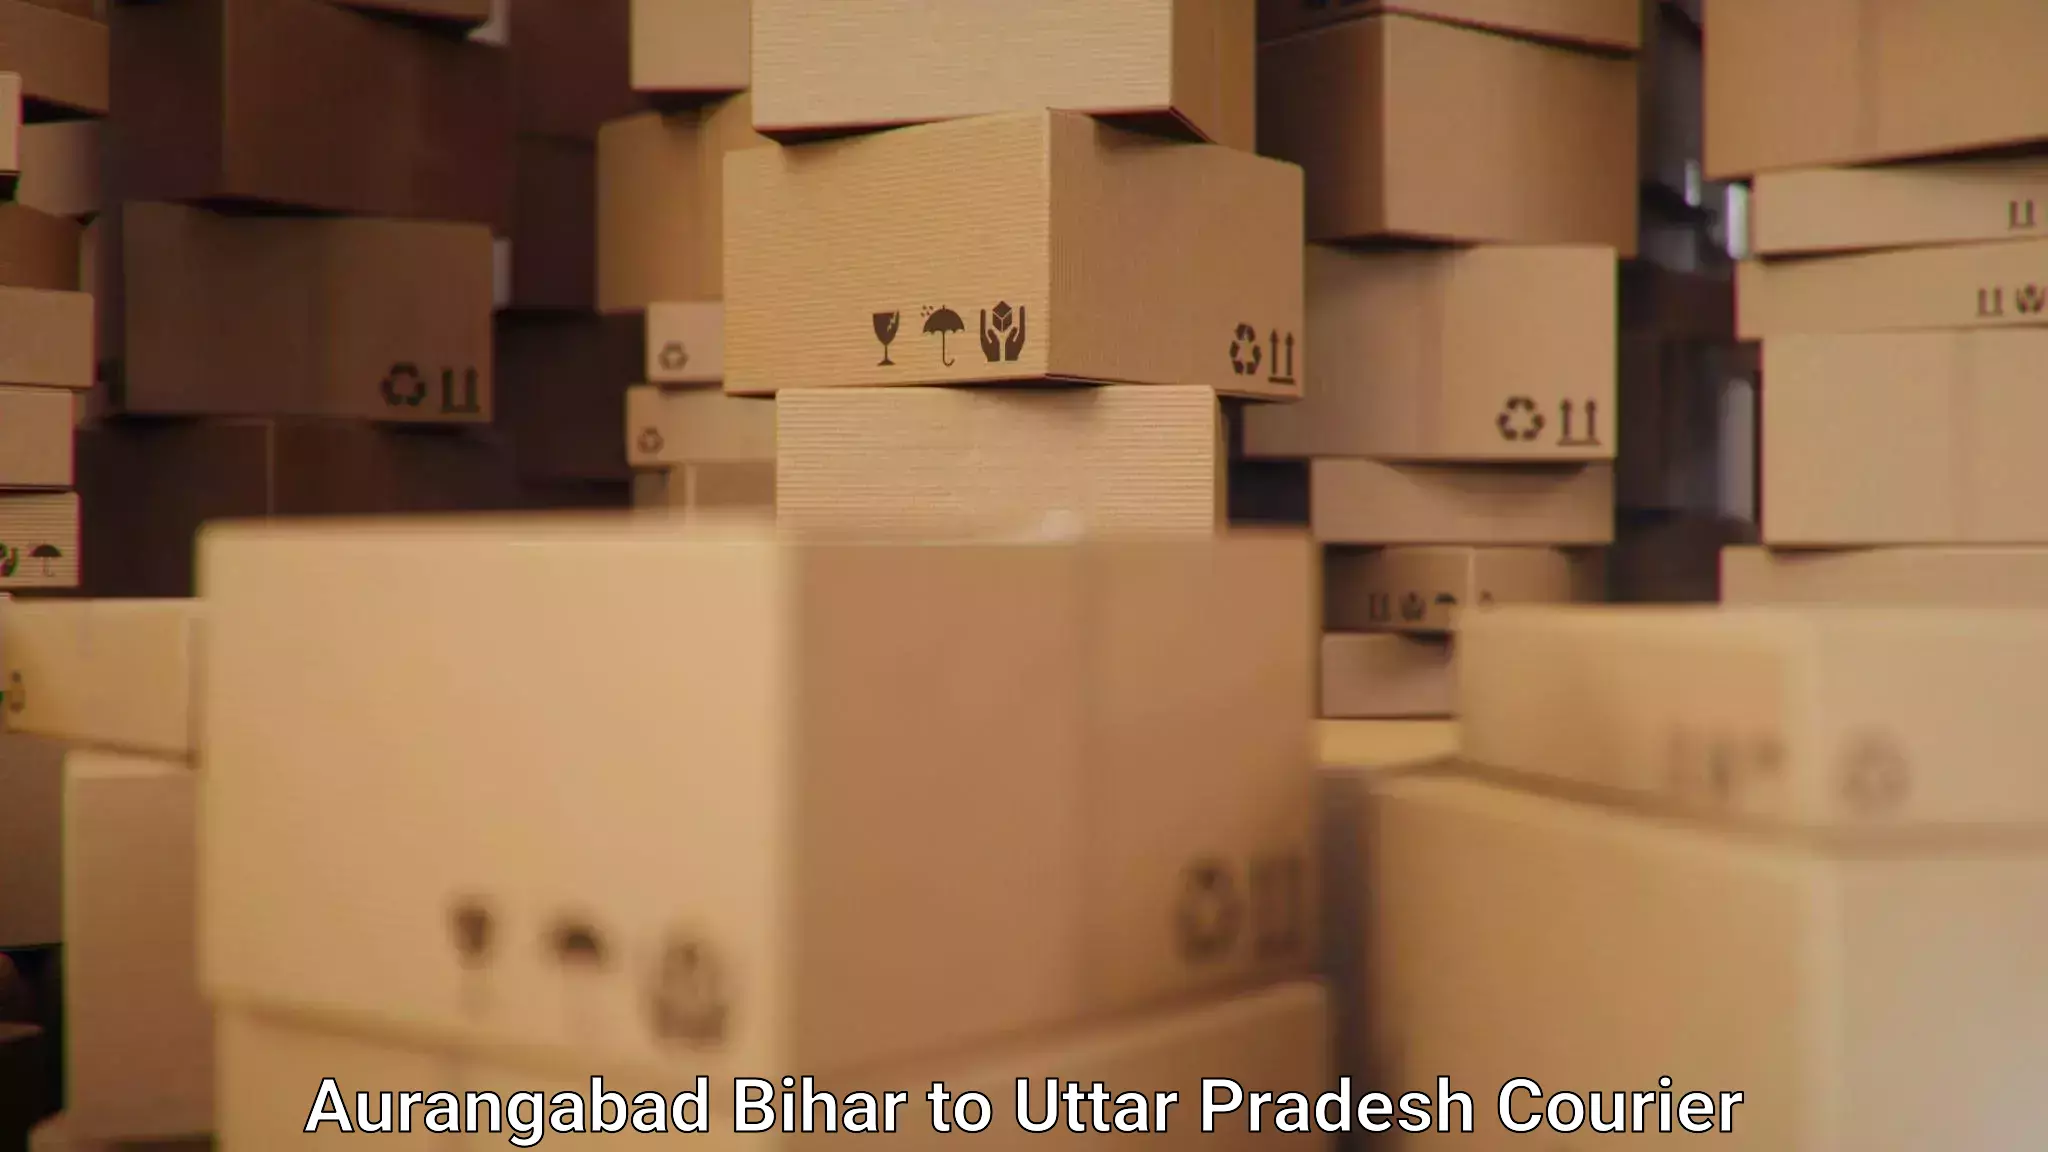 Urban courier service Aurangabad Bihar to Chandpur